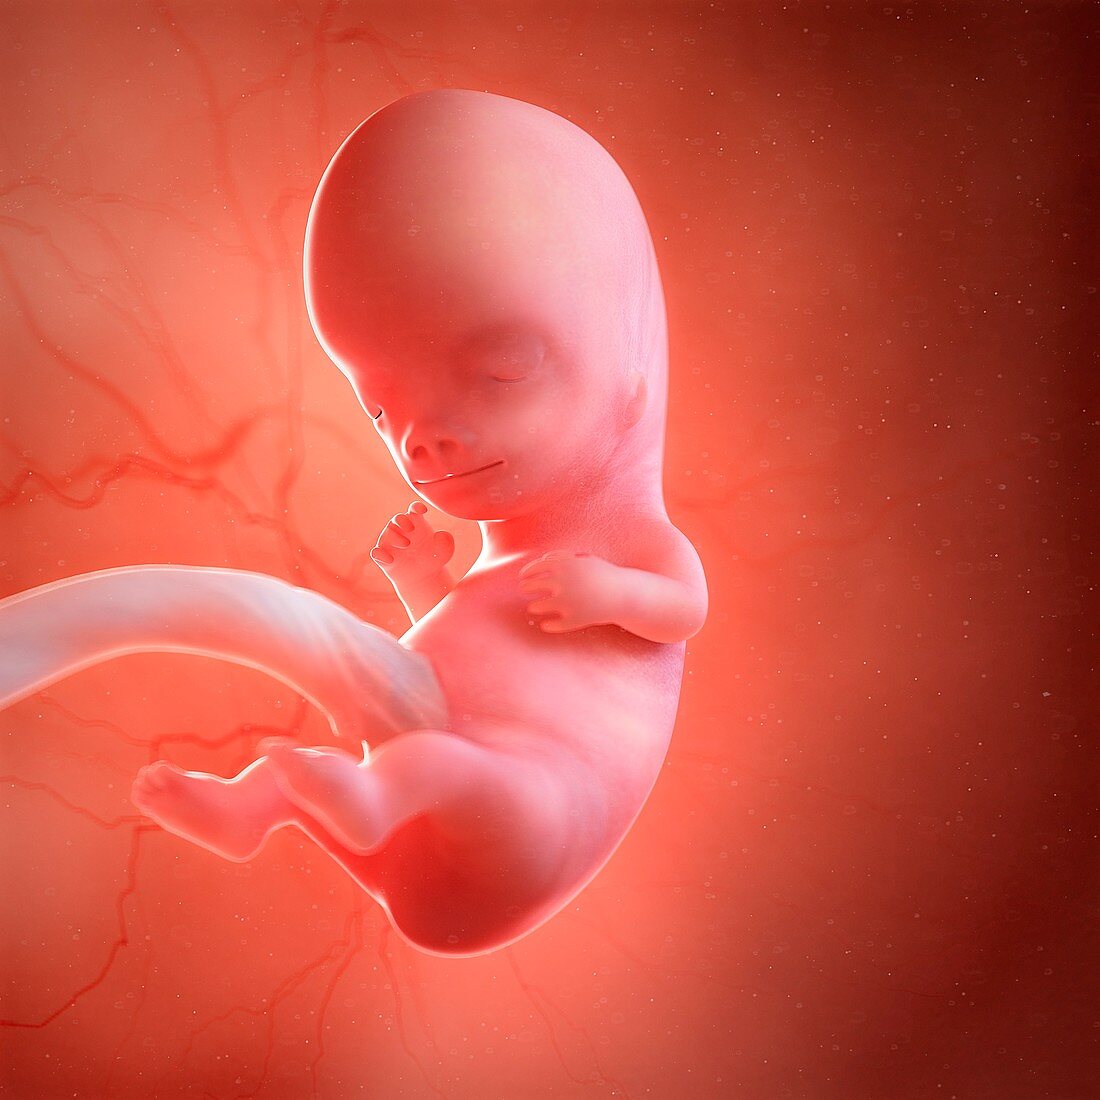 Human foetus age 9 weeks, illustration